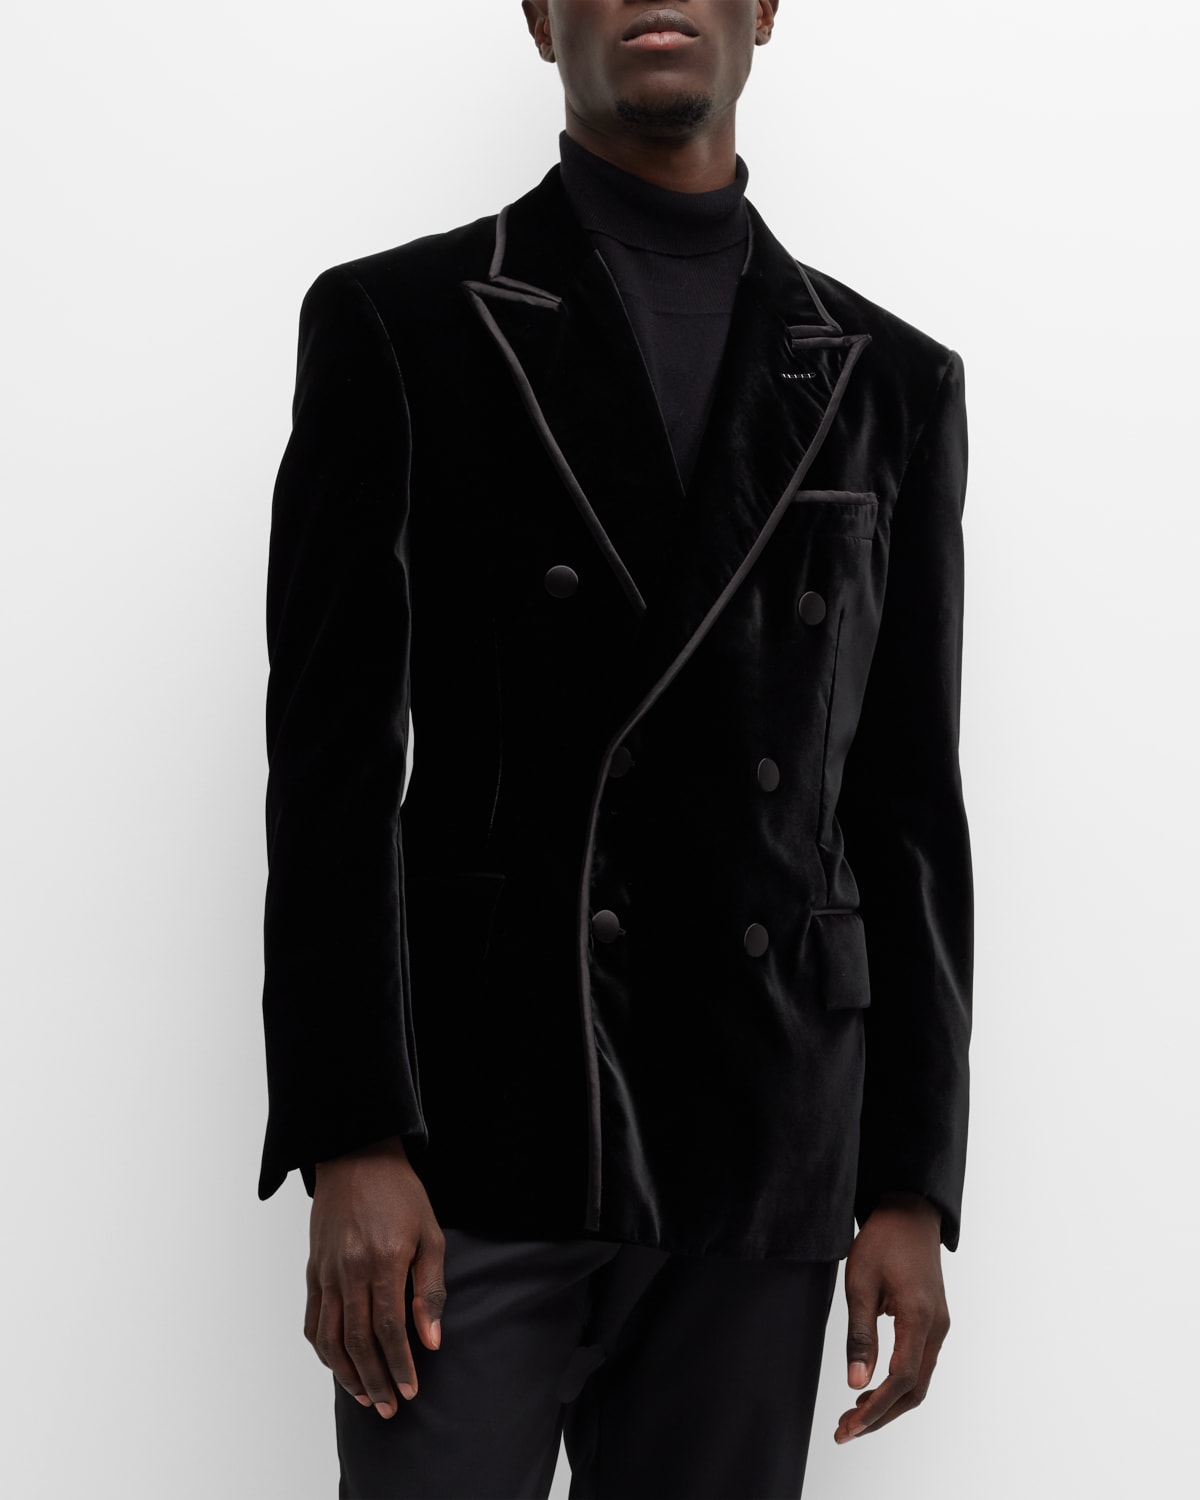 TOM FORD Men's Fluid Velvet Cocktail Jacket | Neiman Marcus